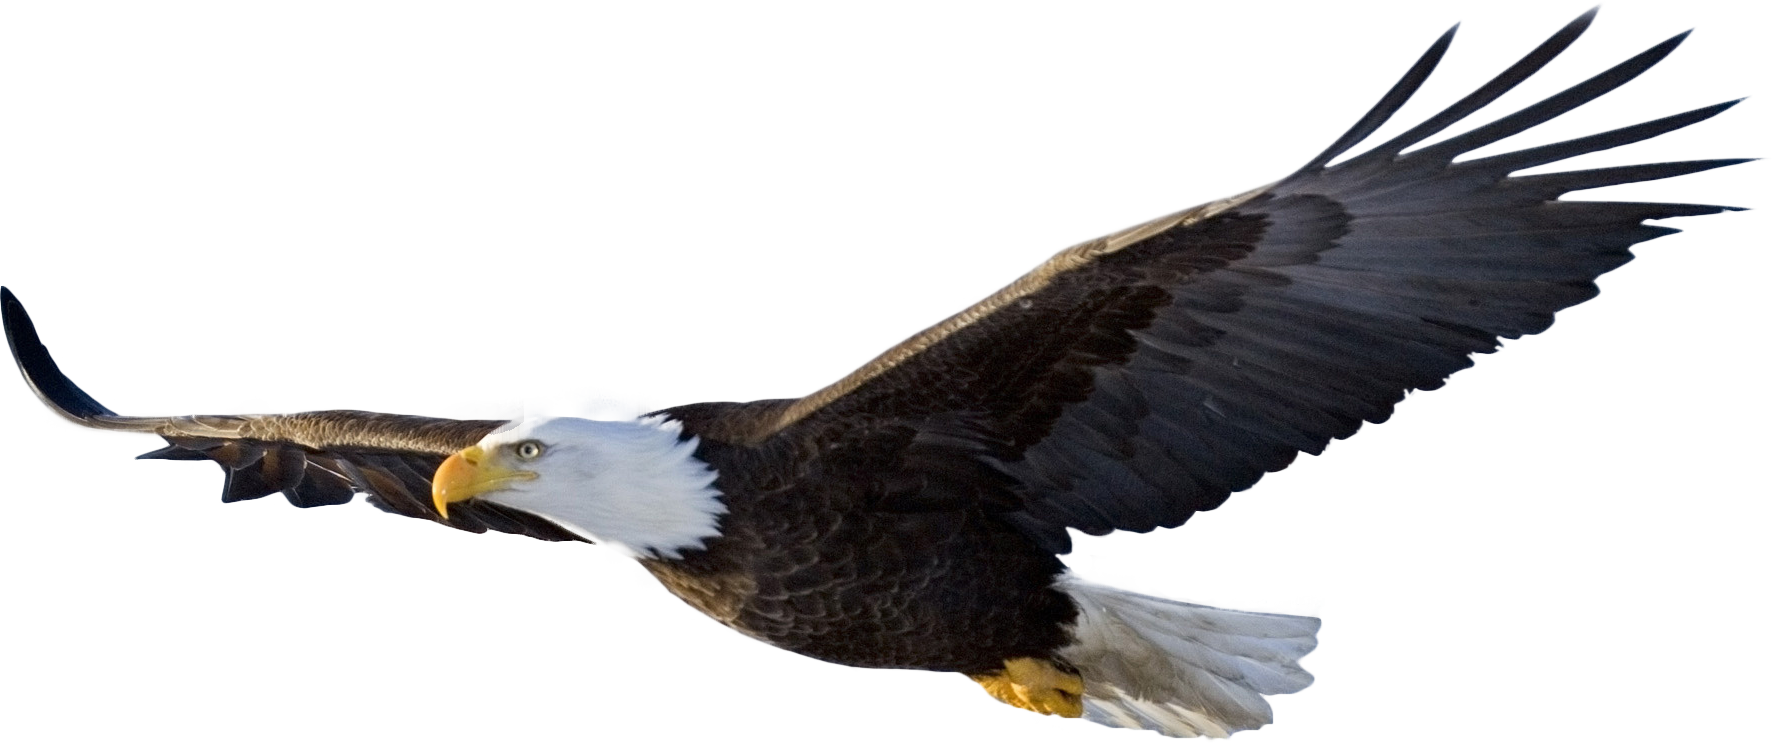 Imagen Transparente de águila